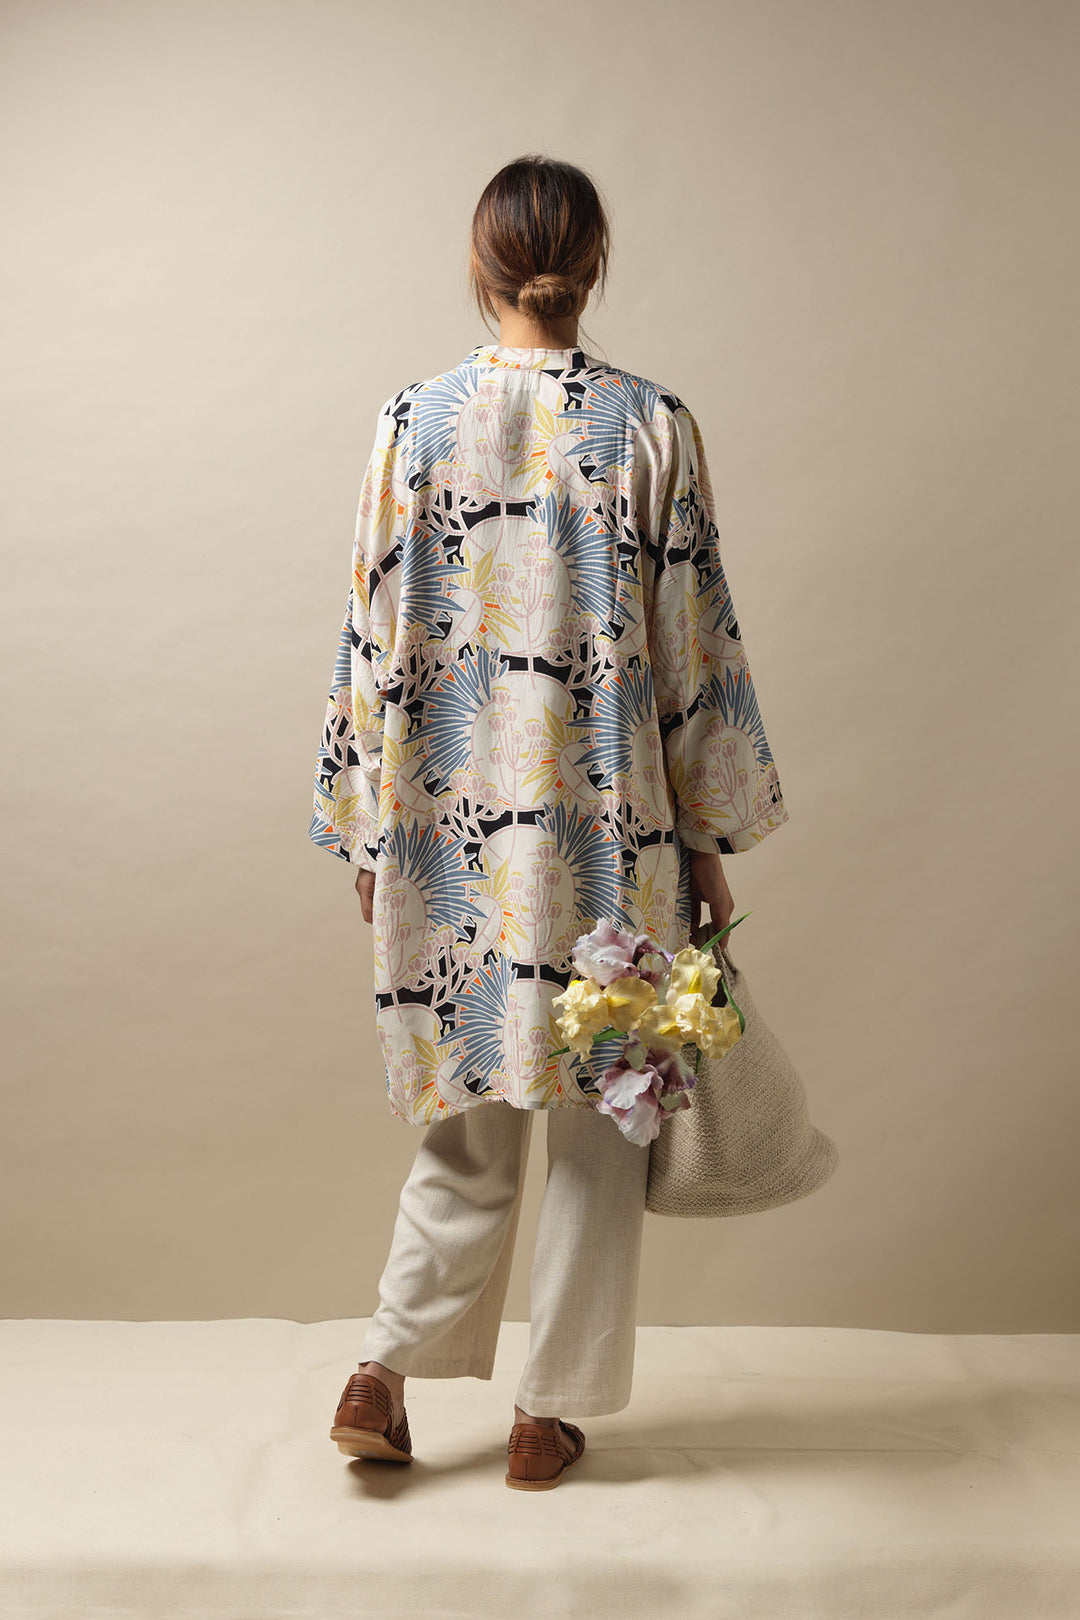 Deco Daisy Mauve Collar Kimono - One Hundred Stars